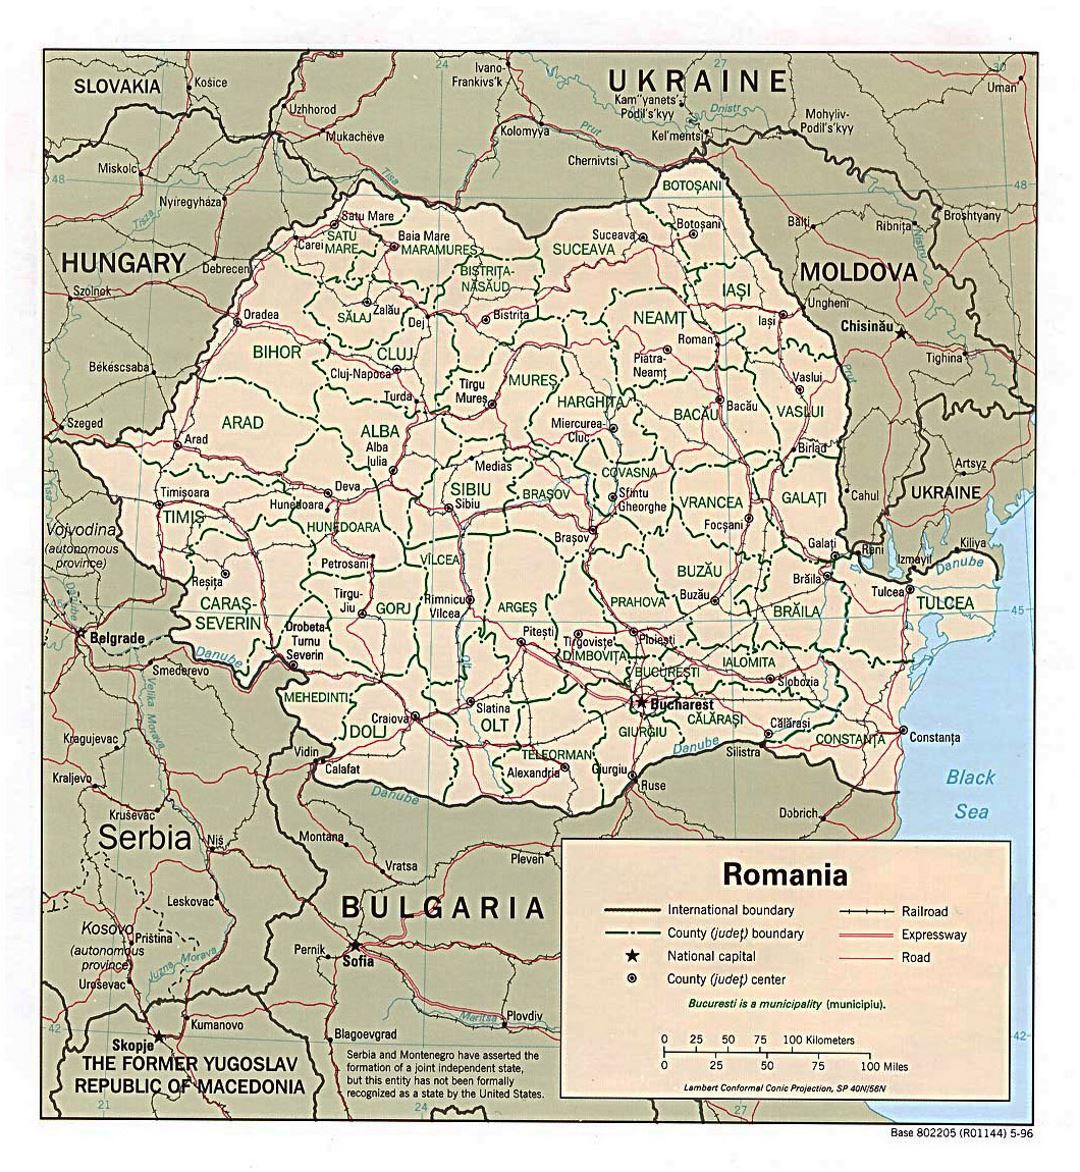 Detallado mapa político y administrativo de Rumania con carreteras, ferrocarriles y principales ciudades - 1996